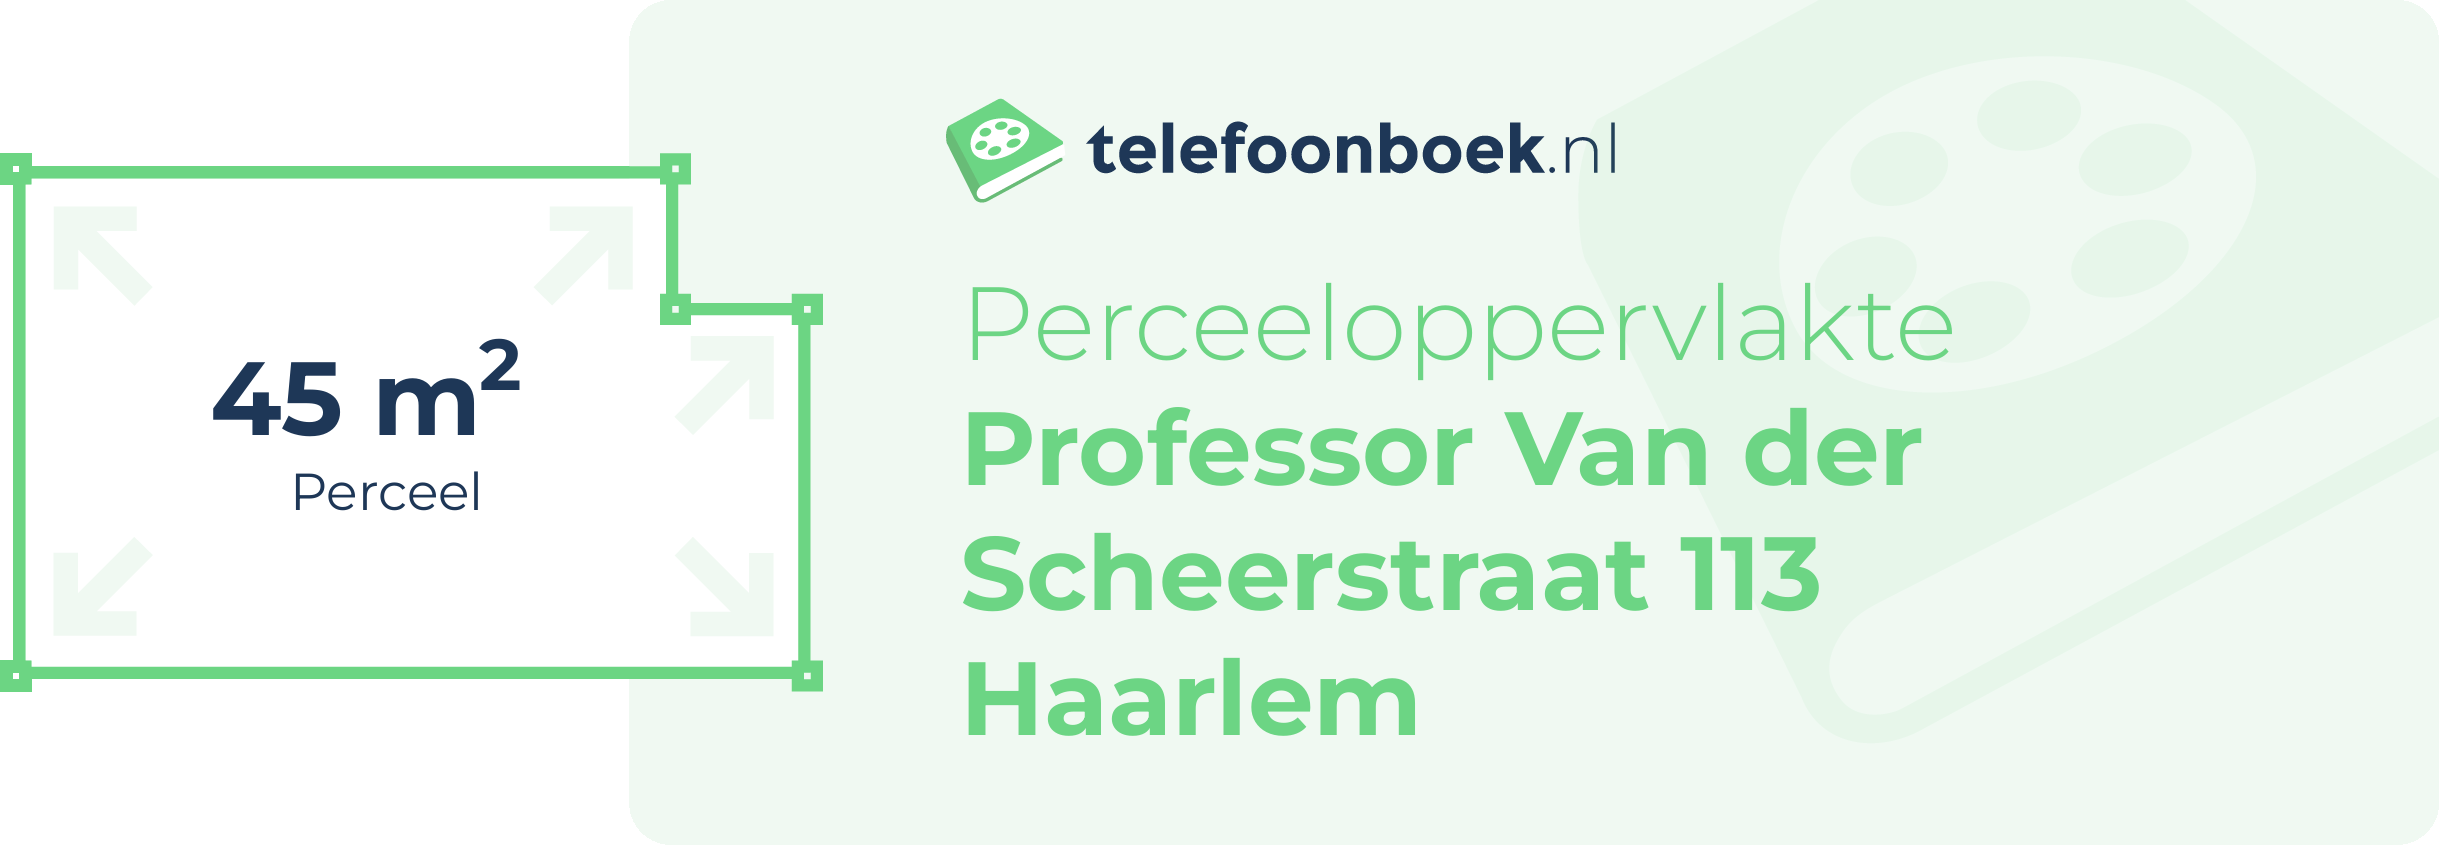 Perceeloppervlakte Professor Van Der Scheerstraat 113 Haarlem